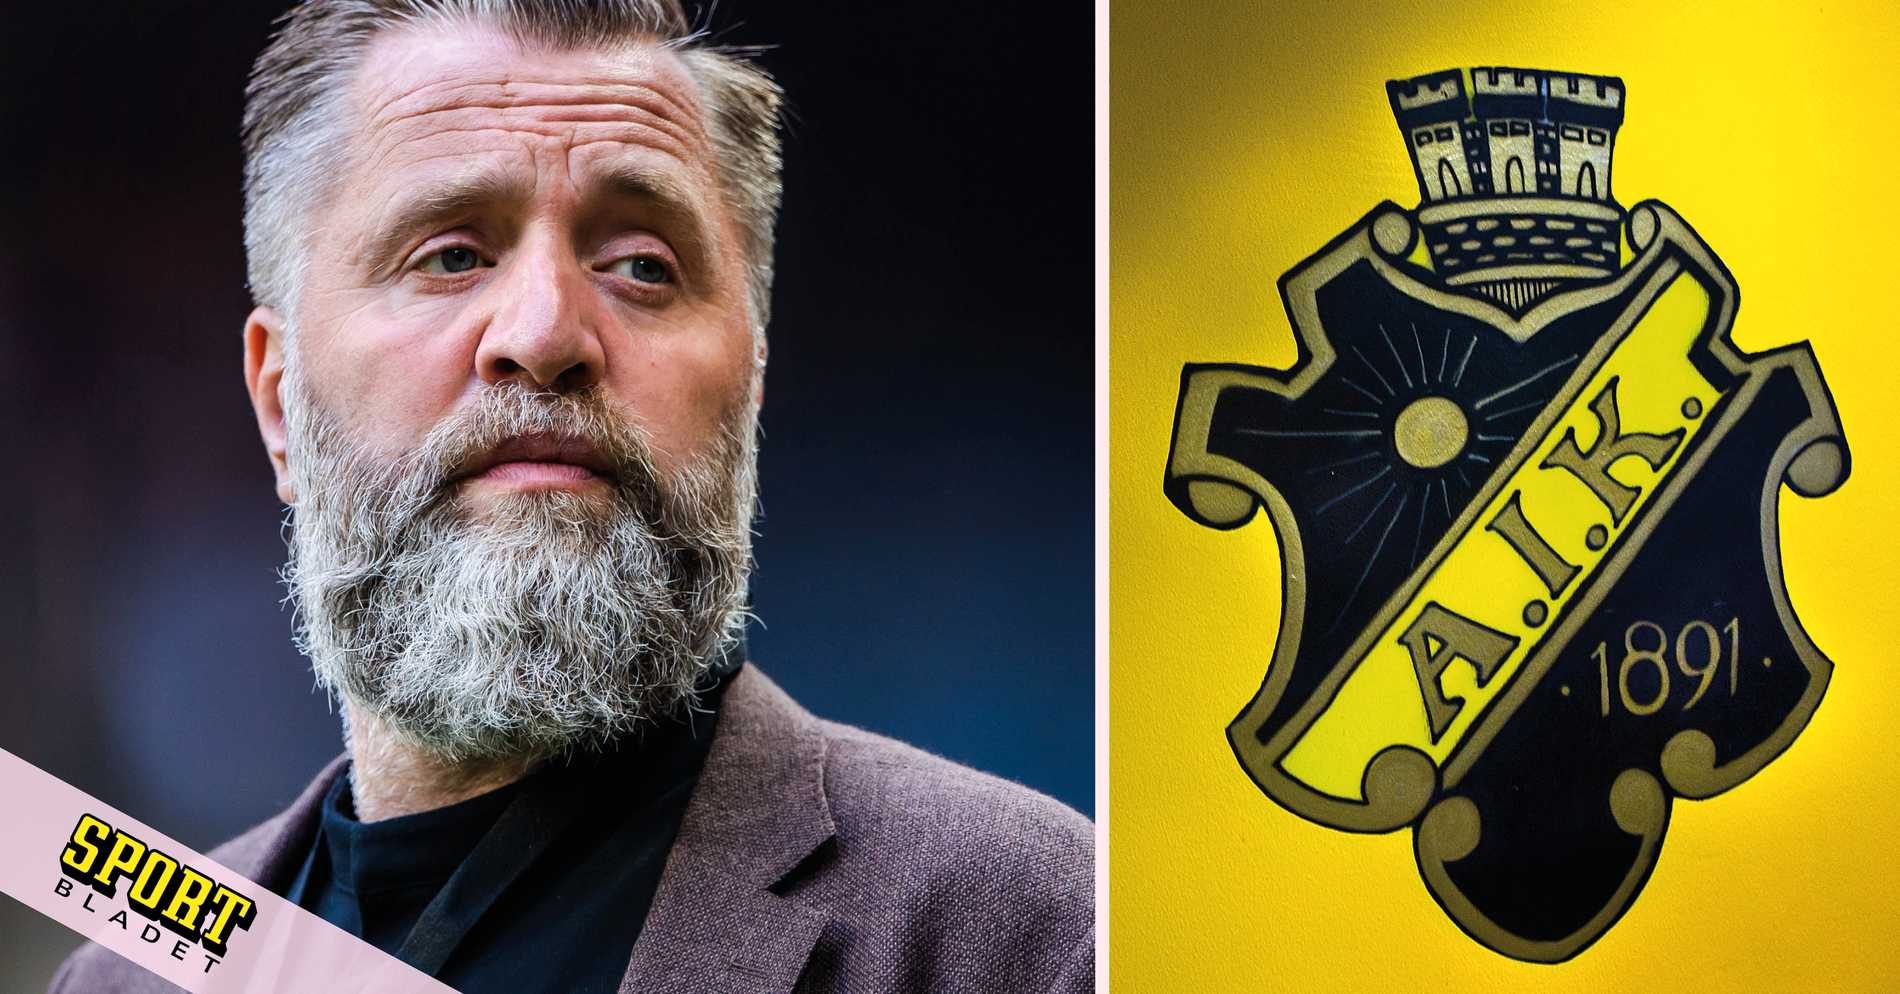 AIK Fotboll: AVSLÖJAR: AIK och allsvenska klubbar hörda i agenthärvan